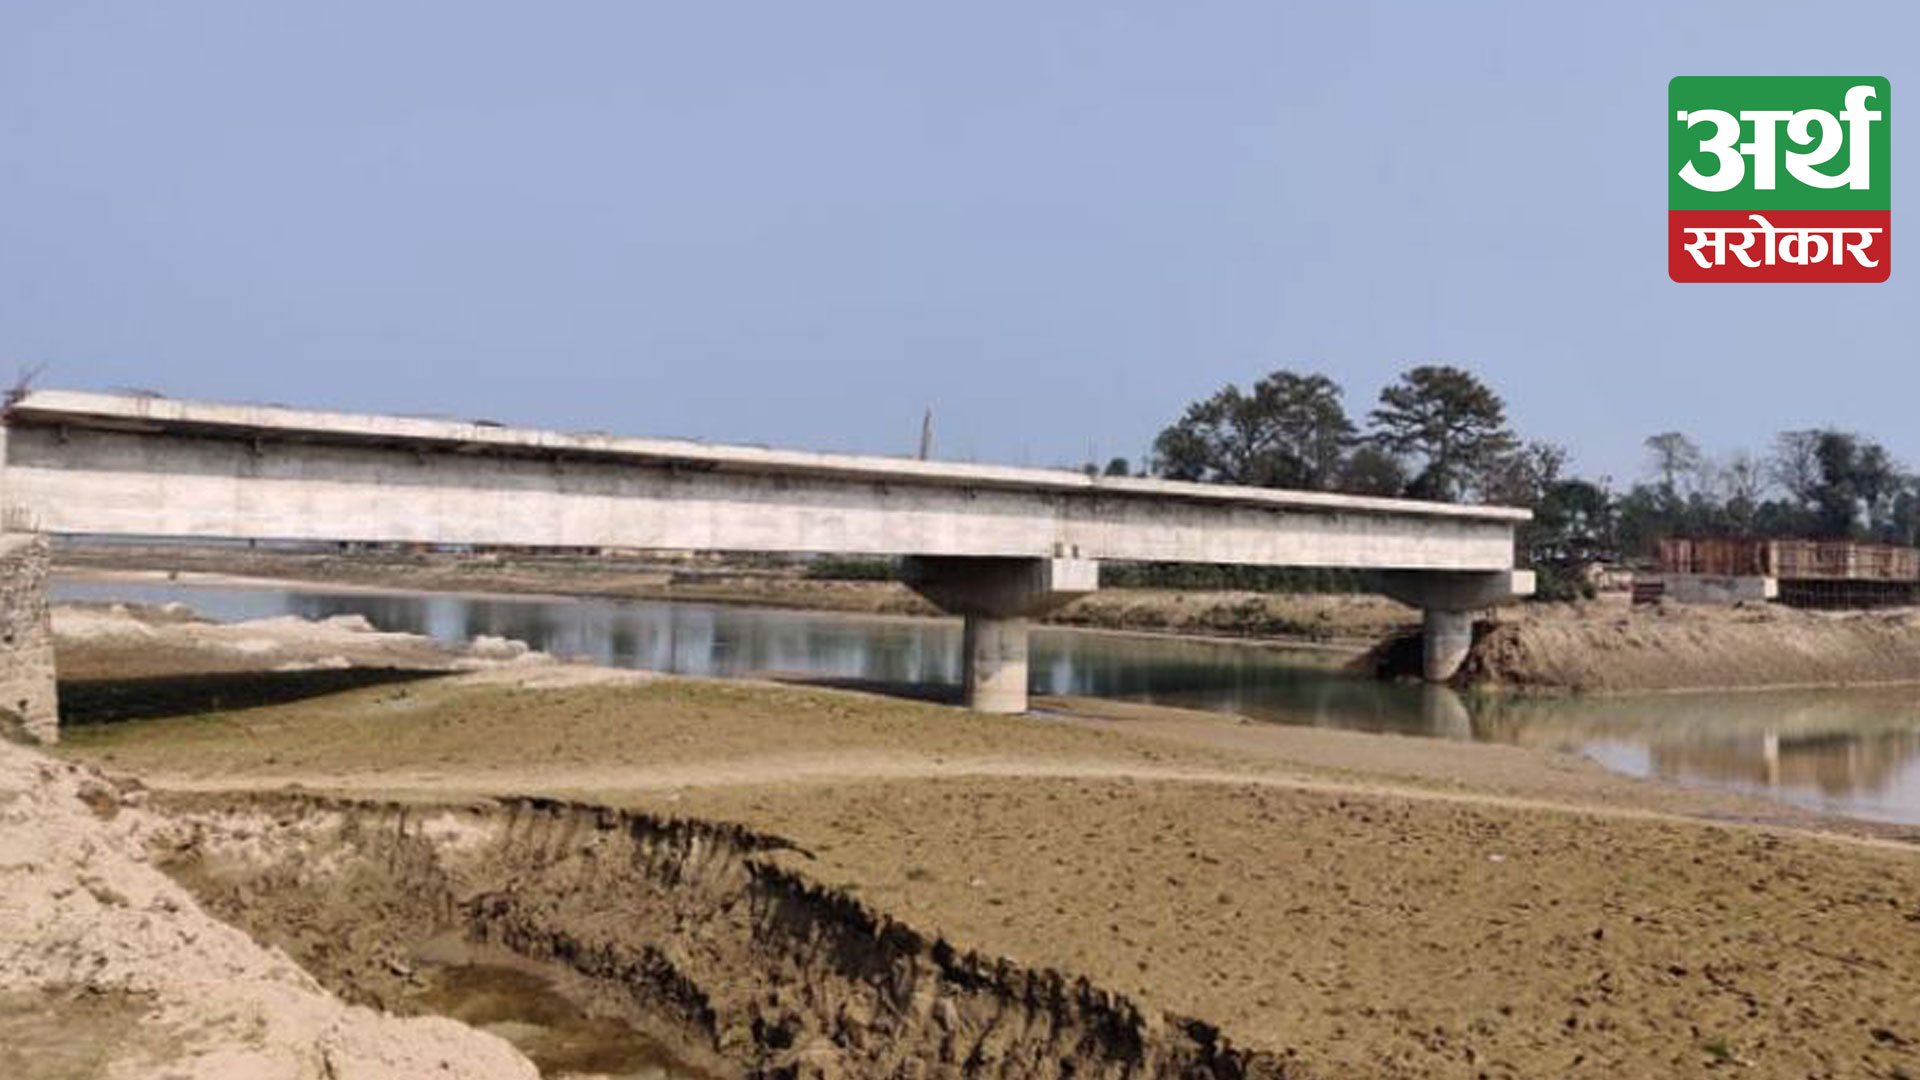 हुलाकी राजमार्ग आयोजनाको पुल निर्माण अलपत्र, आवागमनमा समस्या